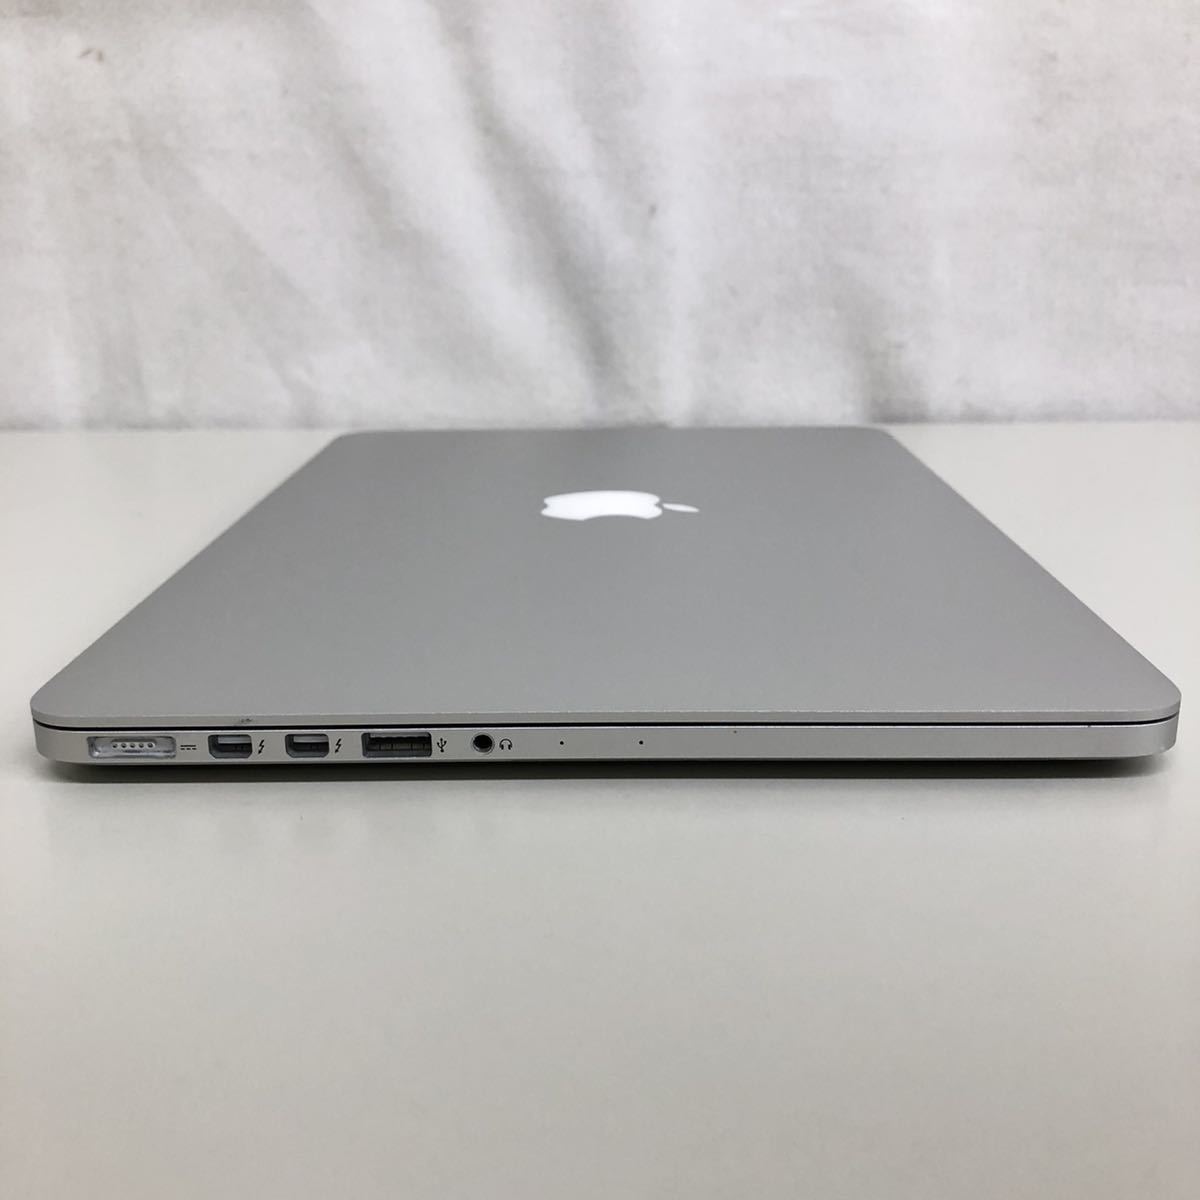 【ジャンク】Apple MacBook Pro Retina 13インチ Early 2015 MF839J/A Monterey/Core i5 2.7GHz/8GB/128GB/A1502 マックブックプロ_画像5